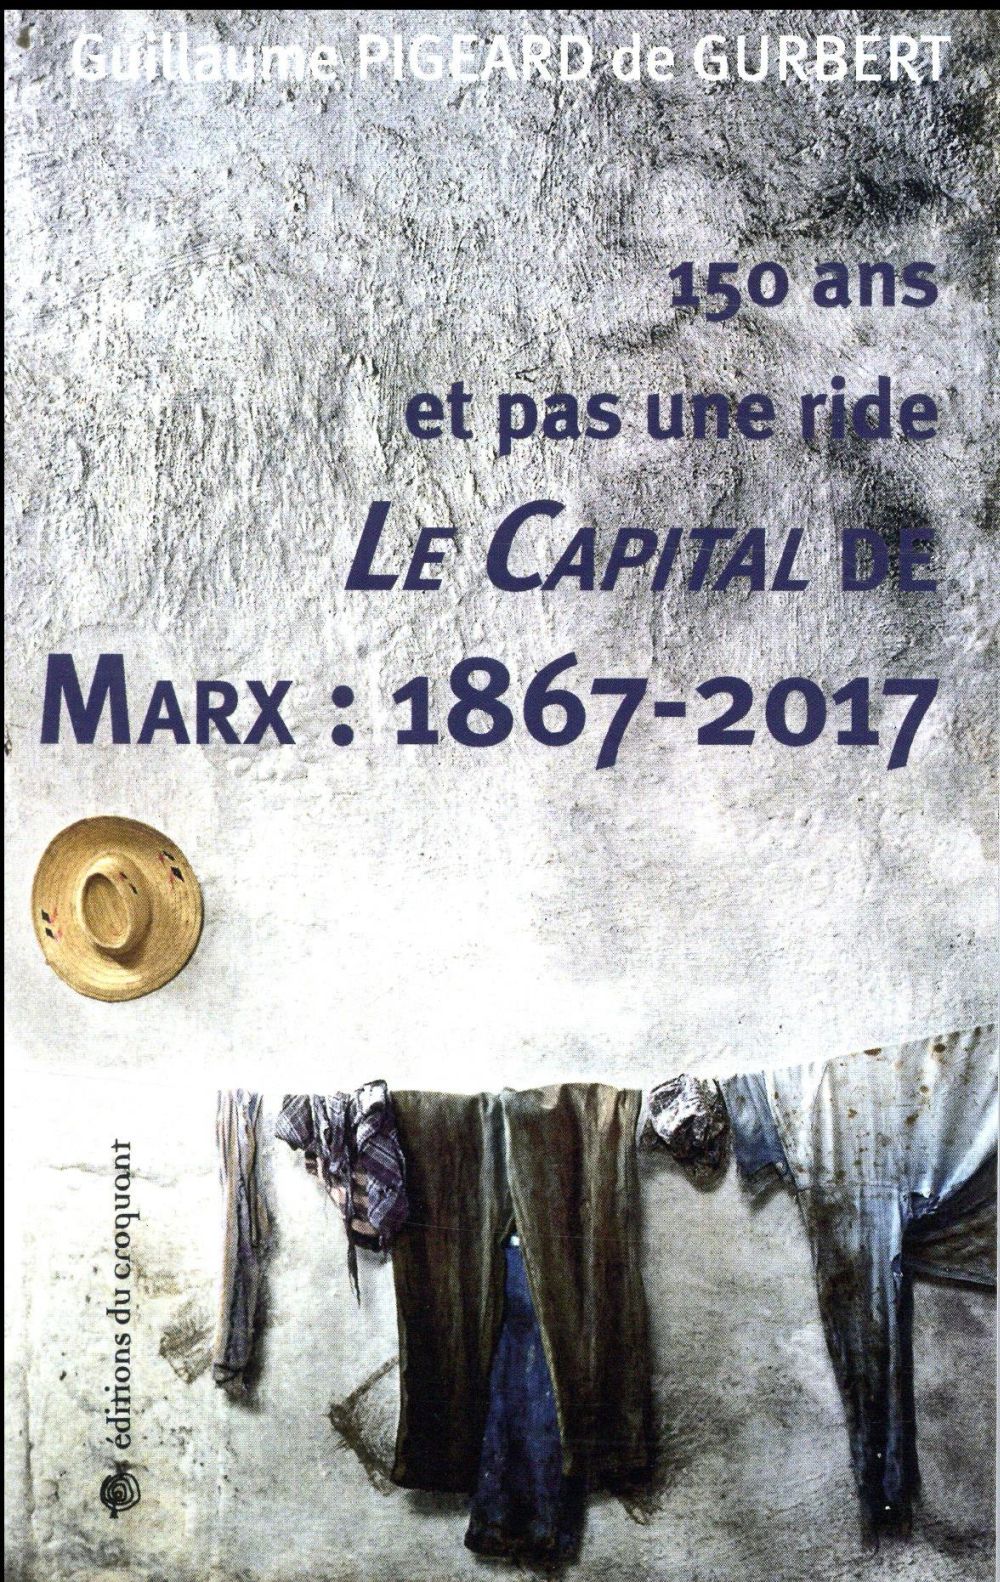 LE CAPITAL DE MARXA : 1867-2017 - 150 ANS ET PAS UNE RIDE